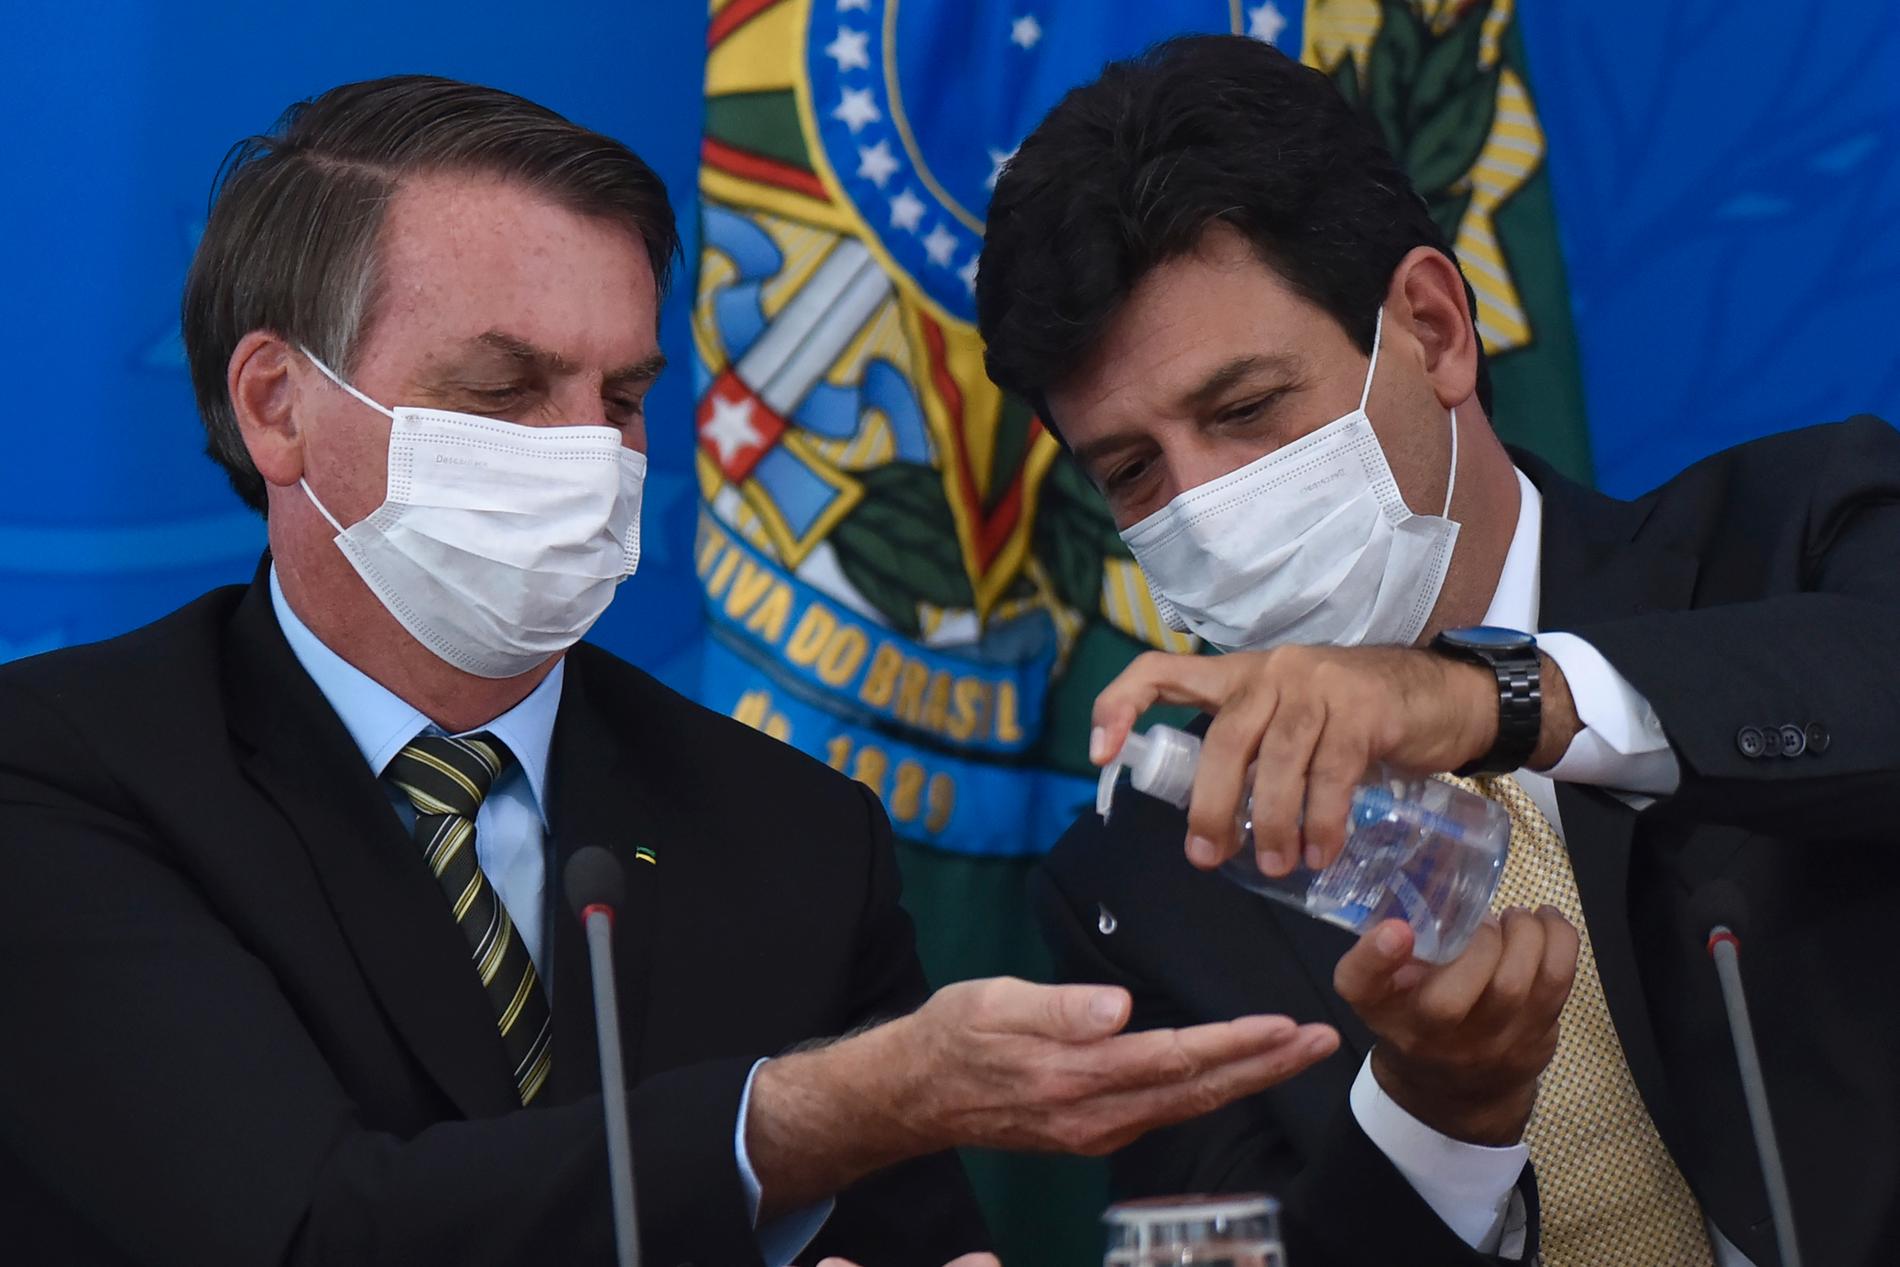 Brasiliens hälsominister Luiz Henrique Mandetta, till höger, trycker ut handsprit i sin chefs, president Jair Bolsonaros, händer under en presskonferens vid presidentpalatset i Brasilia den 18 mars.